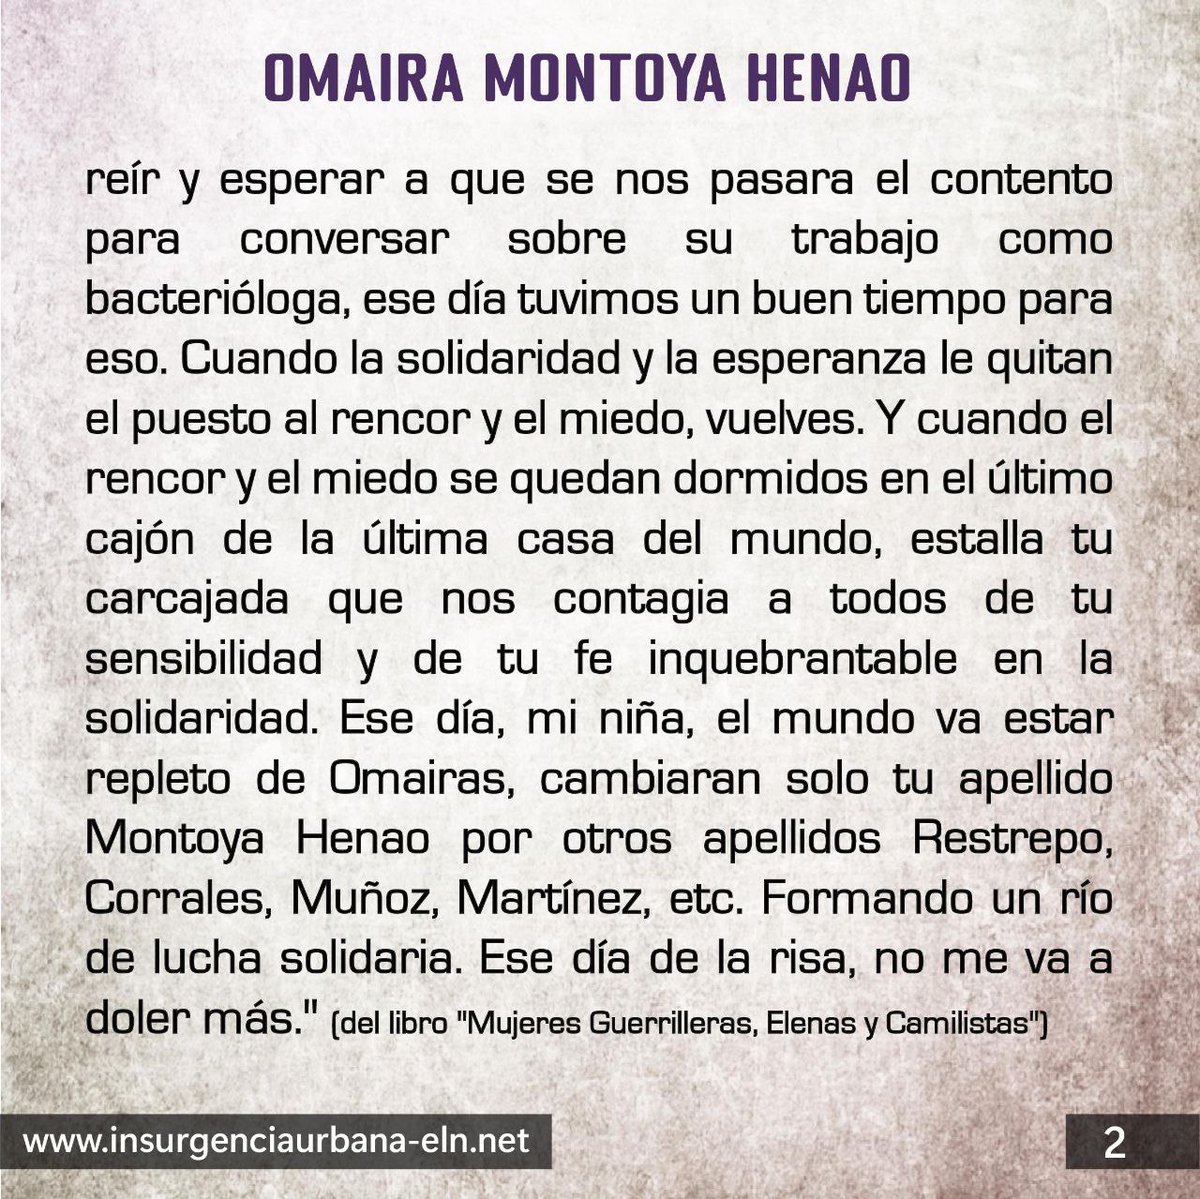 #SomosMujeresRebeldes

Omaira Montoya Henao
🔴⚫ Mujer insurgente. Detenida y desaparecida por el Estado colombiano.

#SiempreJuntoAlPueblo
#InsurgenciaUrbana
#ELN60Años